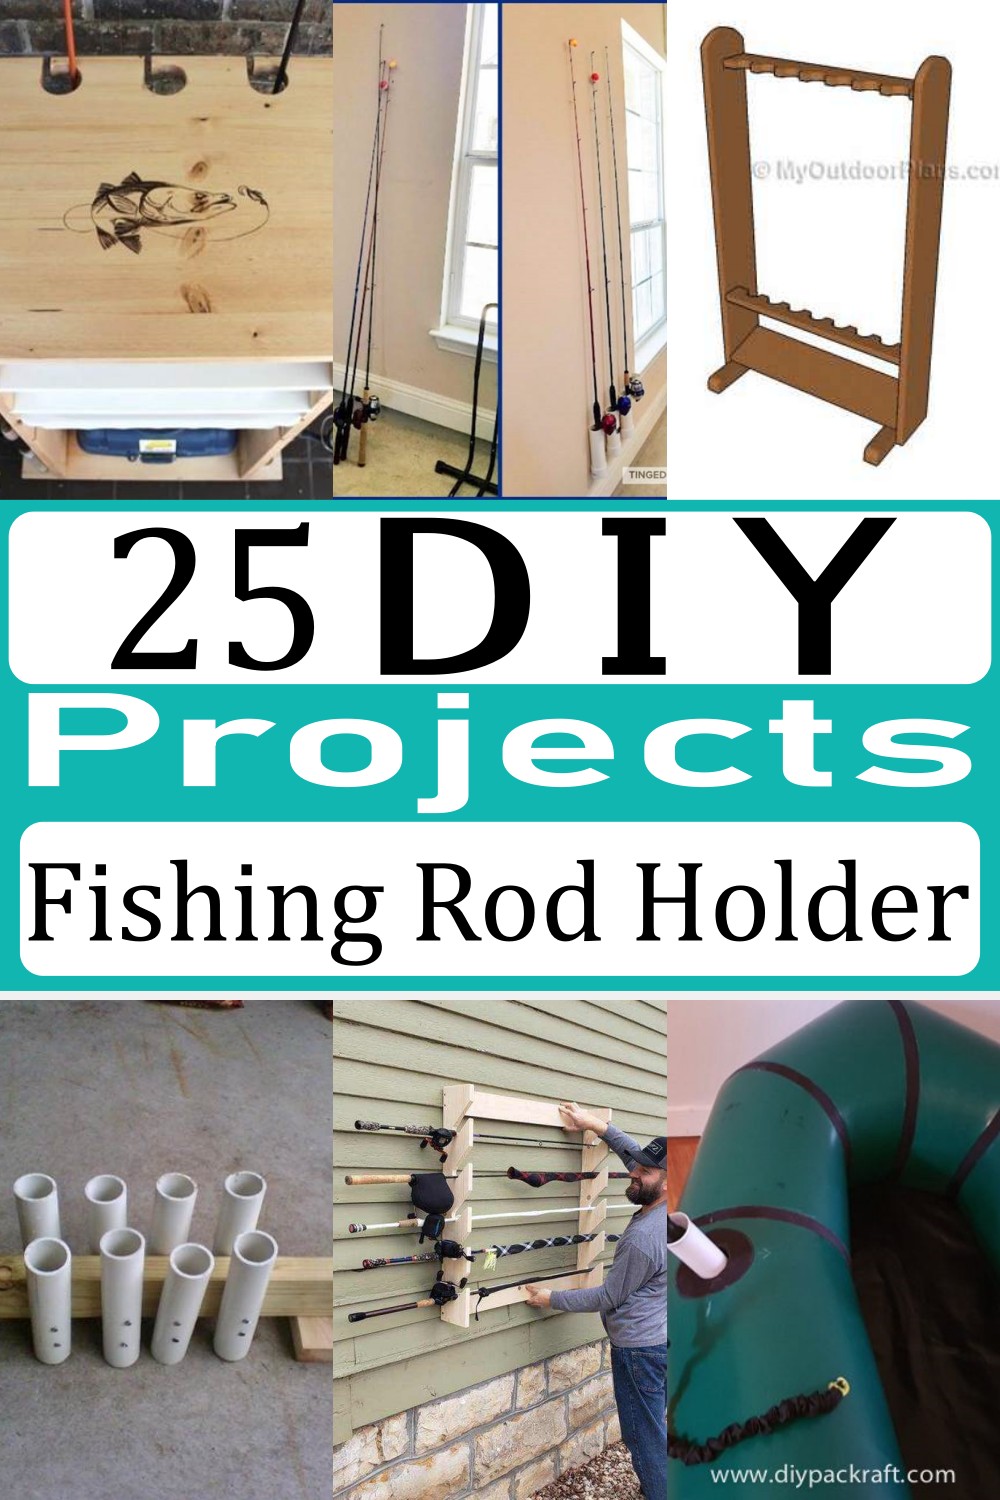 DIY Fishing Rod Holder